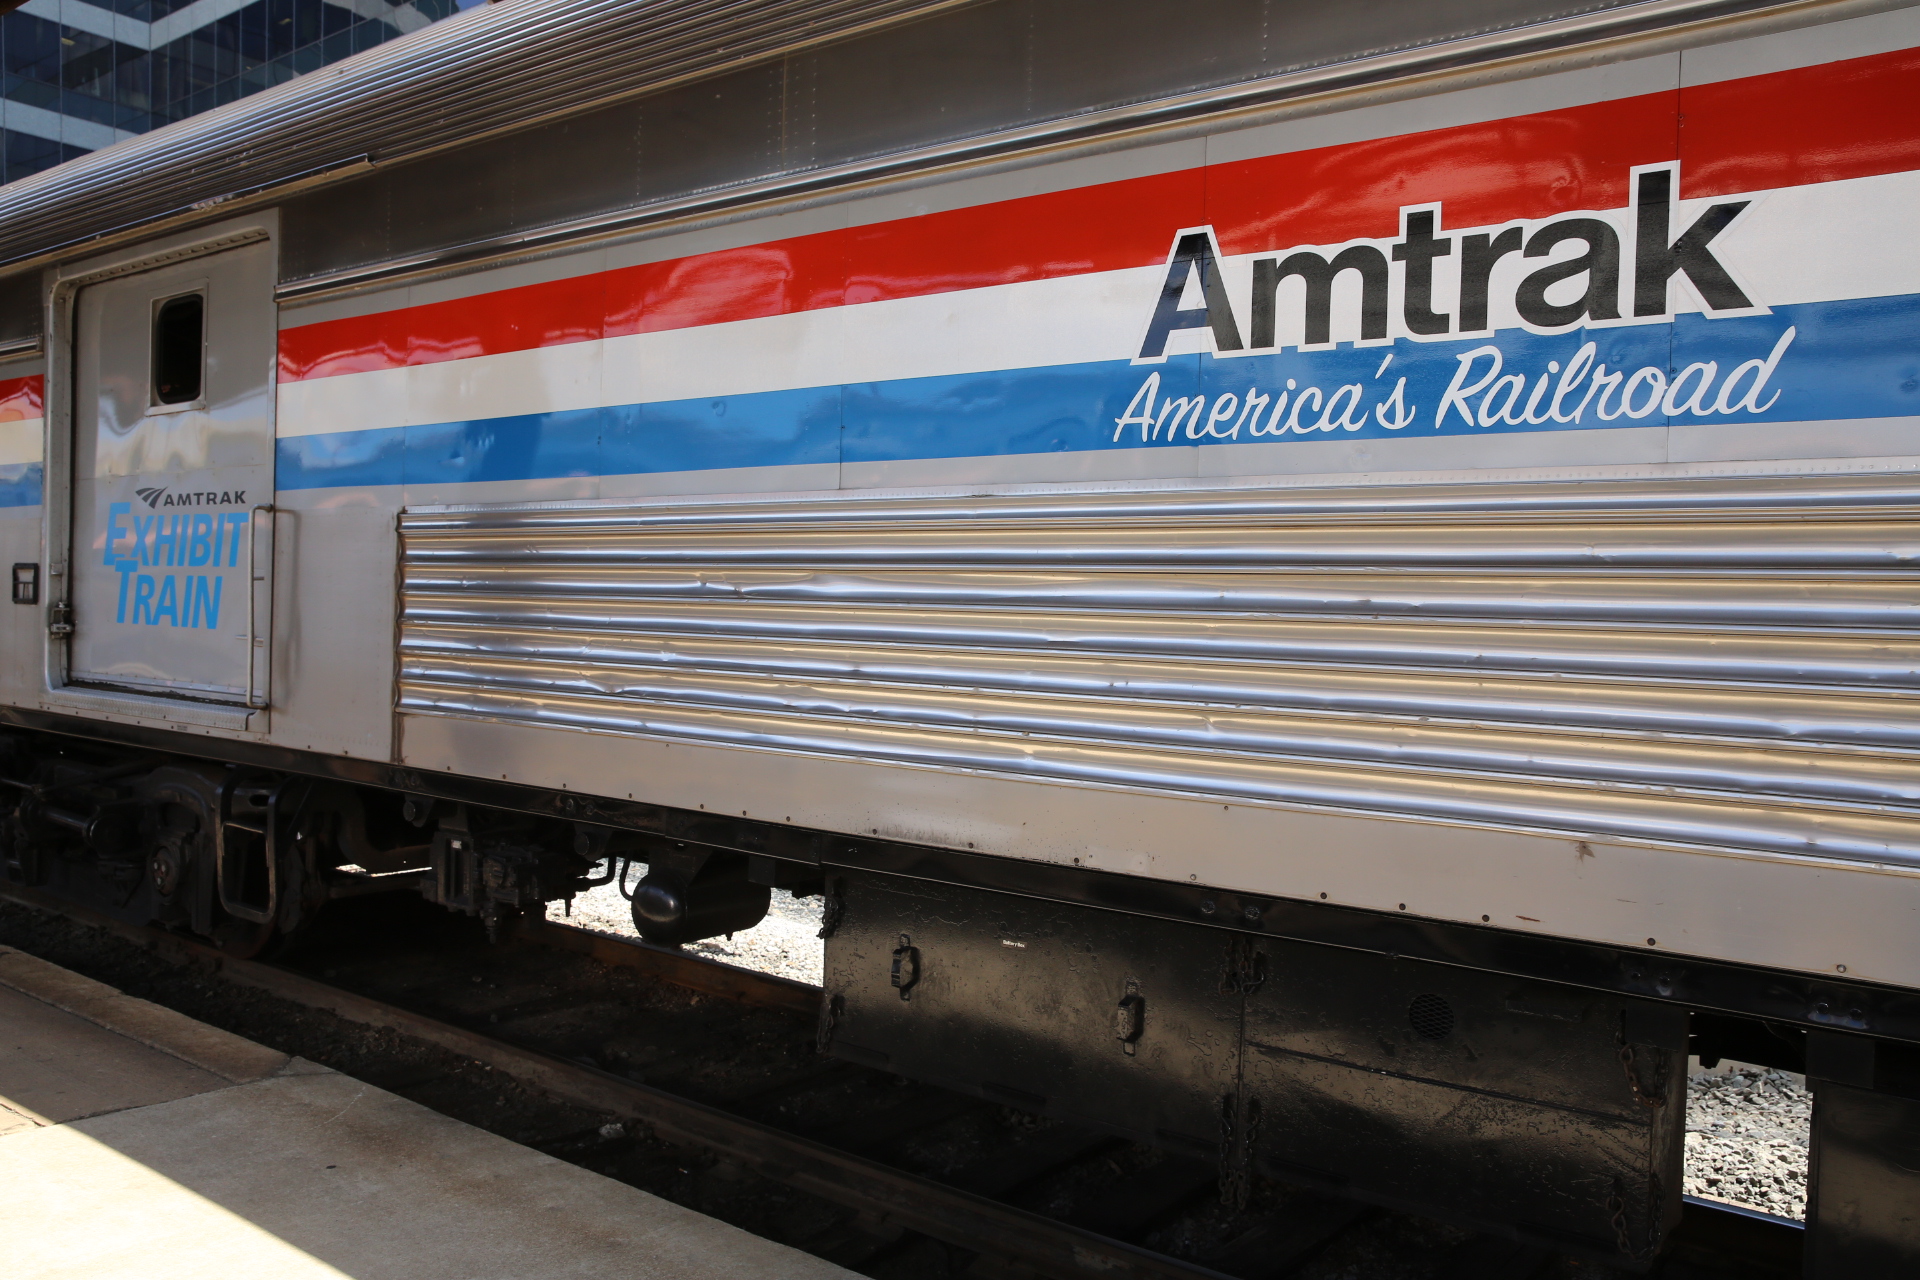 All Aboard America: Exhibit Train 2016